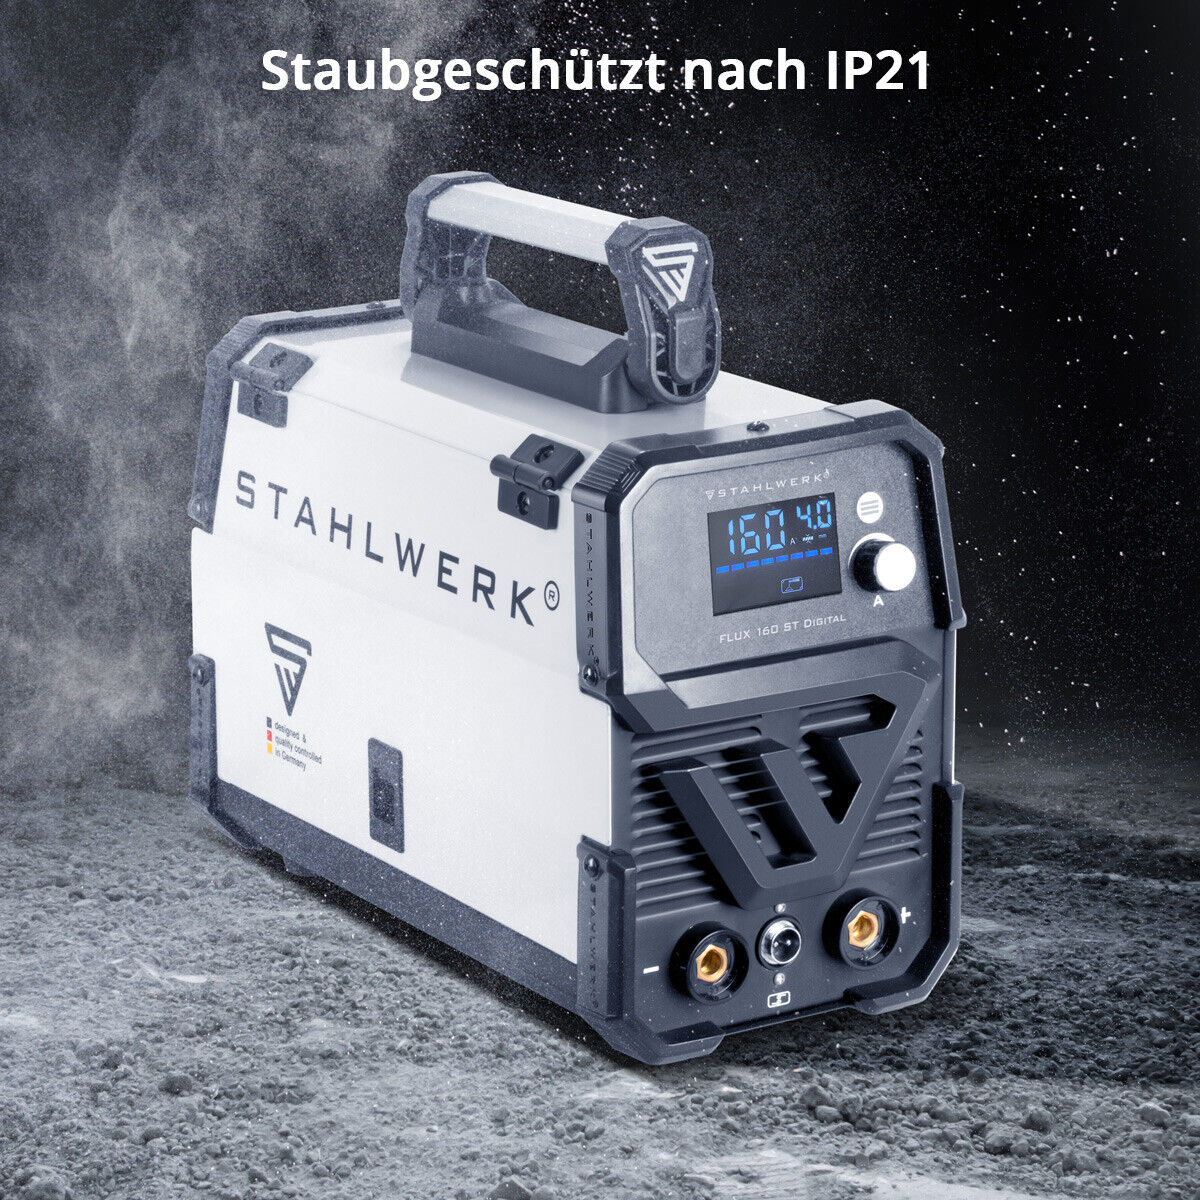 STAHLWERK Schweißgerät FLUX 160 ST Digital mit 160 A, synergischem Drahtvorschub